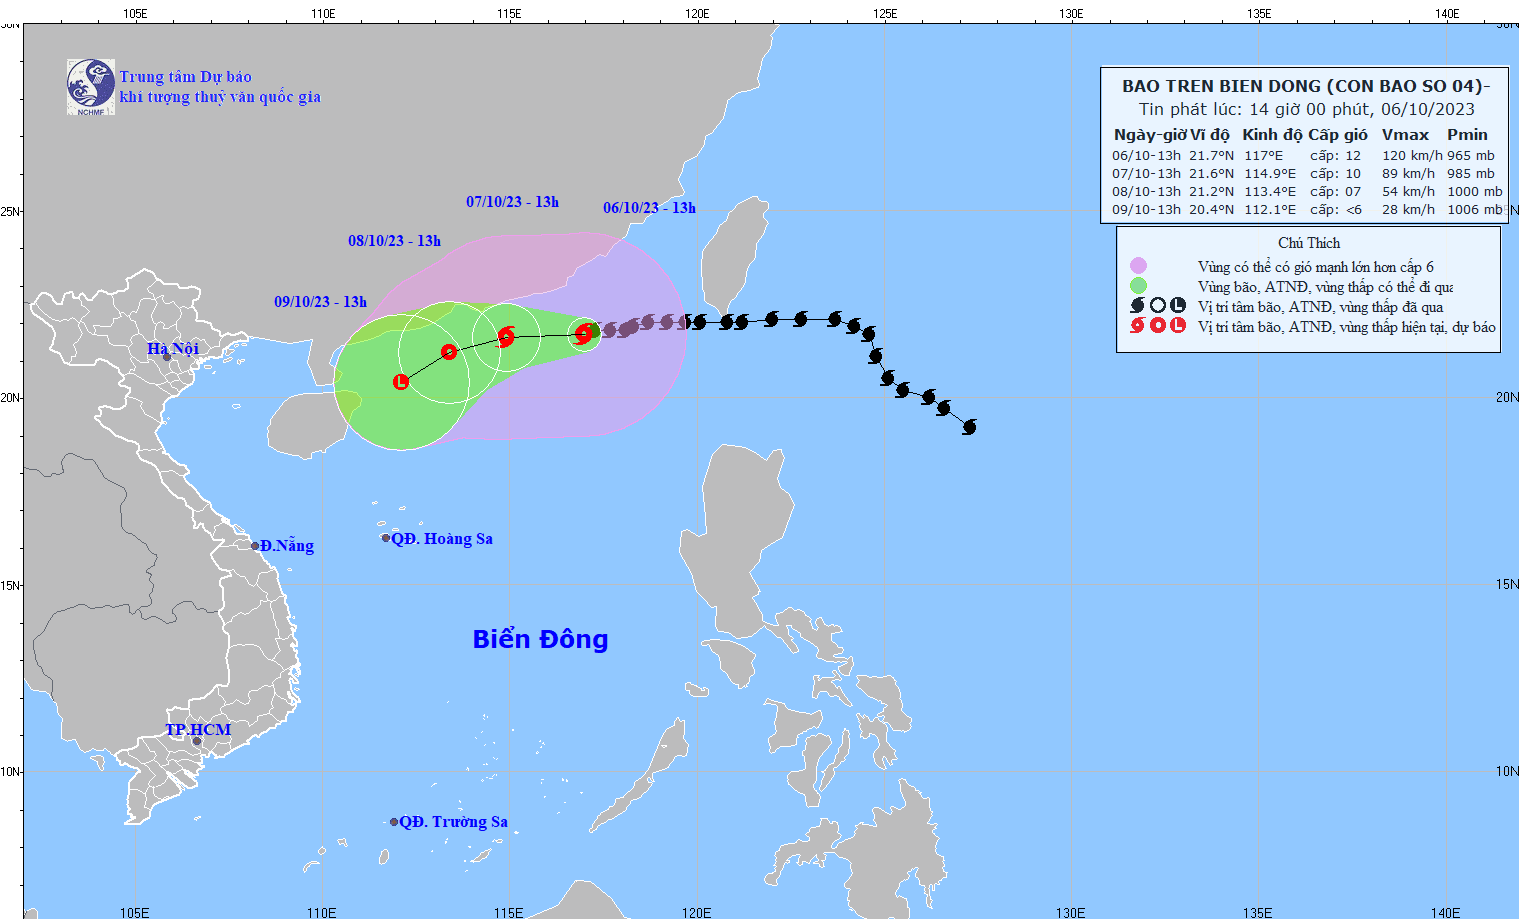 Dự báo bão số 4: Di chuyển theo hướng Tây, gió vùng tâm bão mạnh cấp 12; Trung Quốc cảnh báo nguy hiểm mức thứ ba về bão Koinu